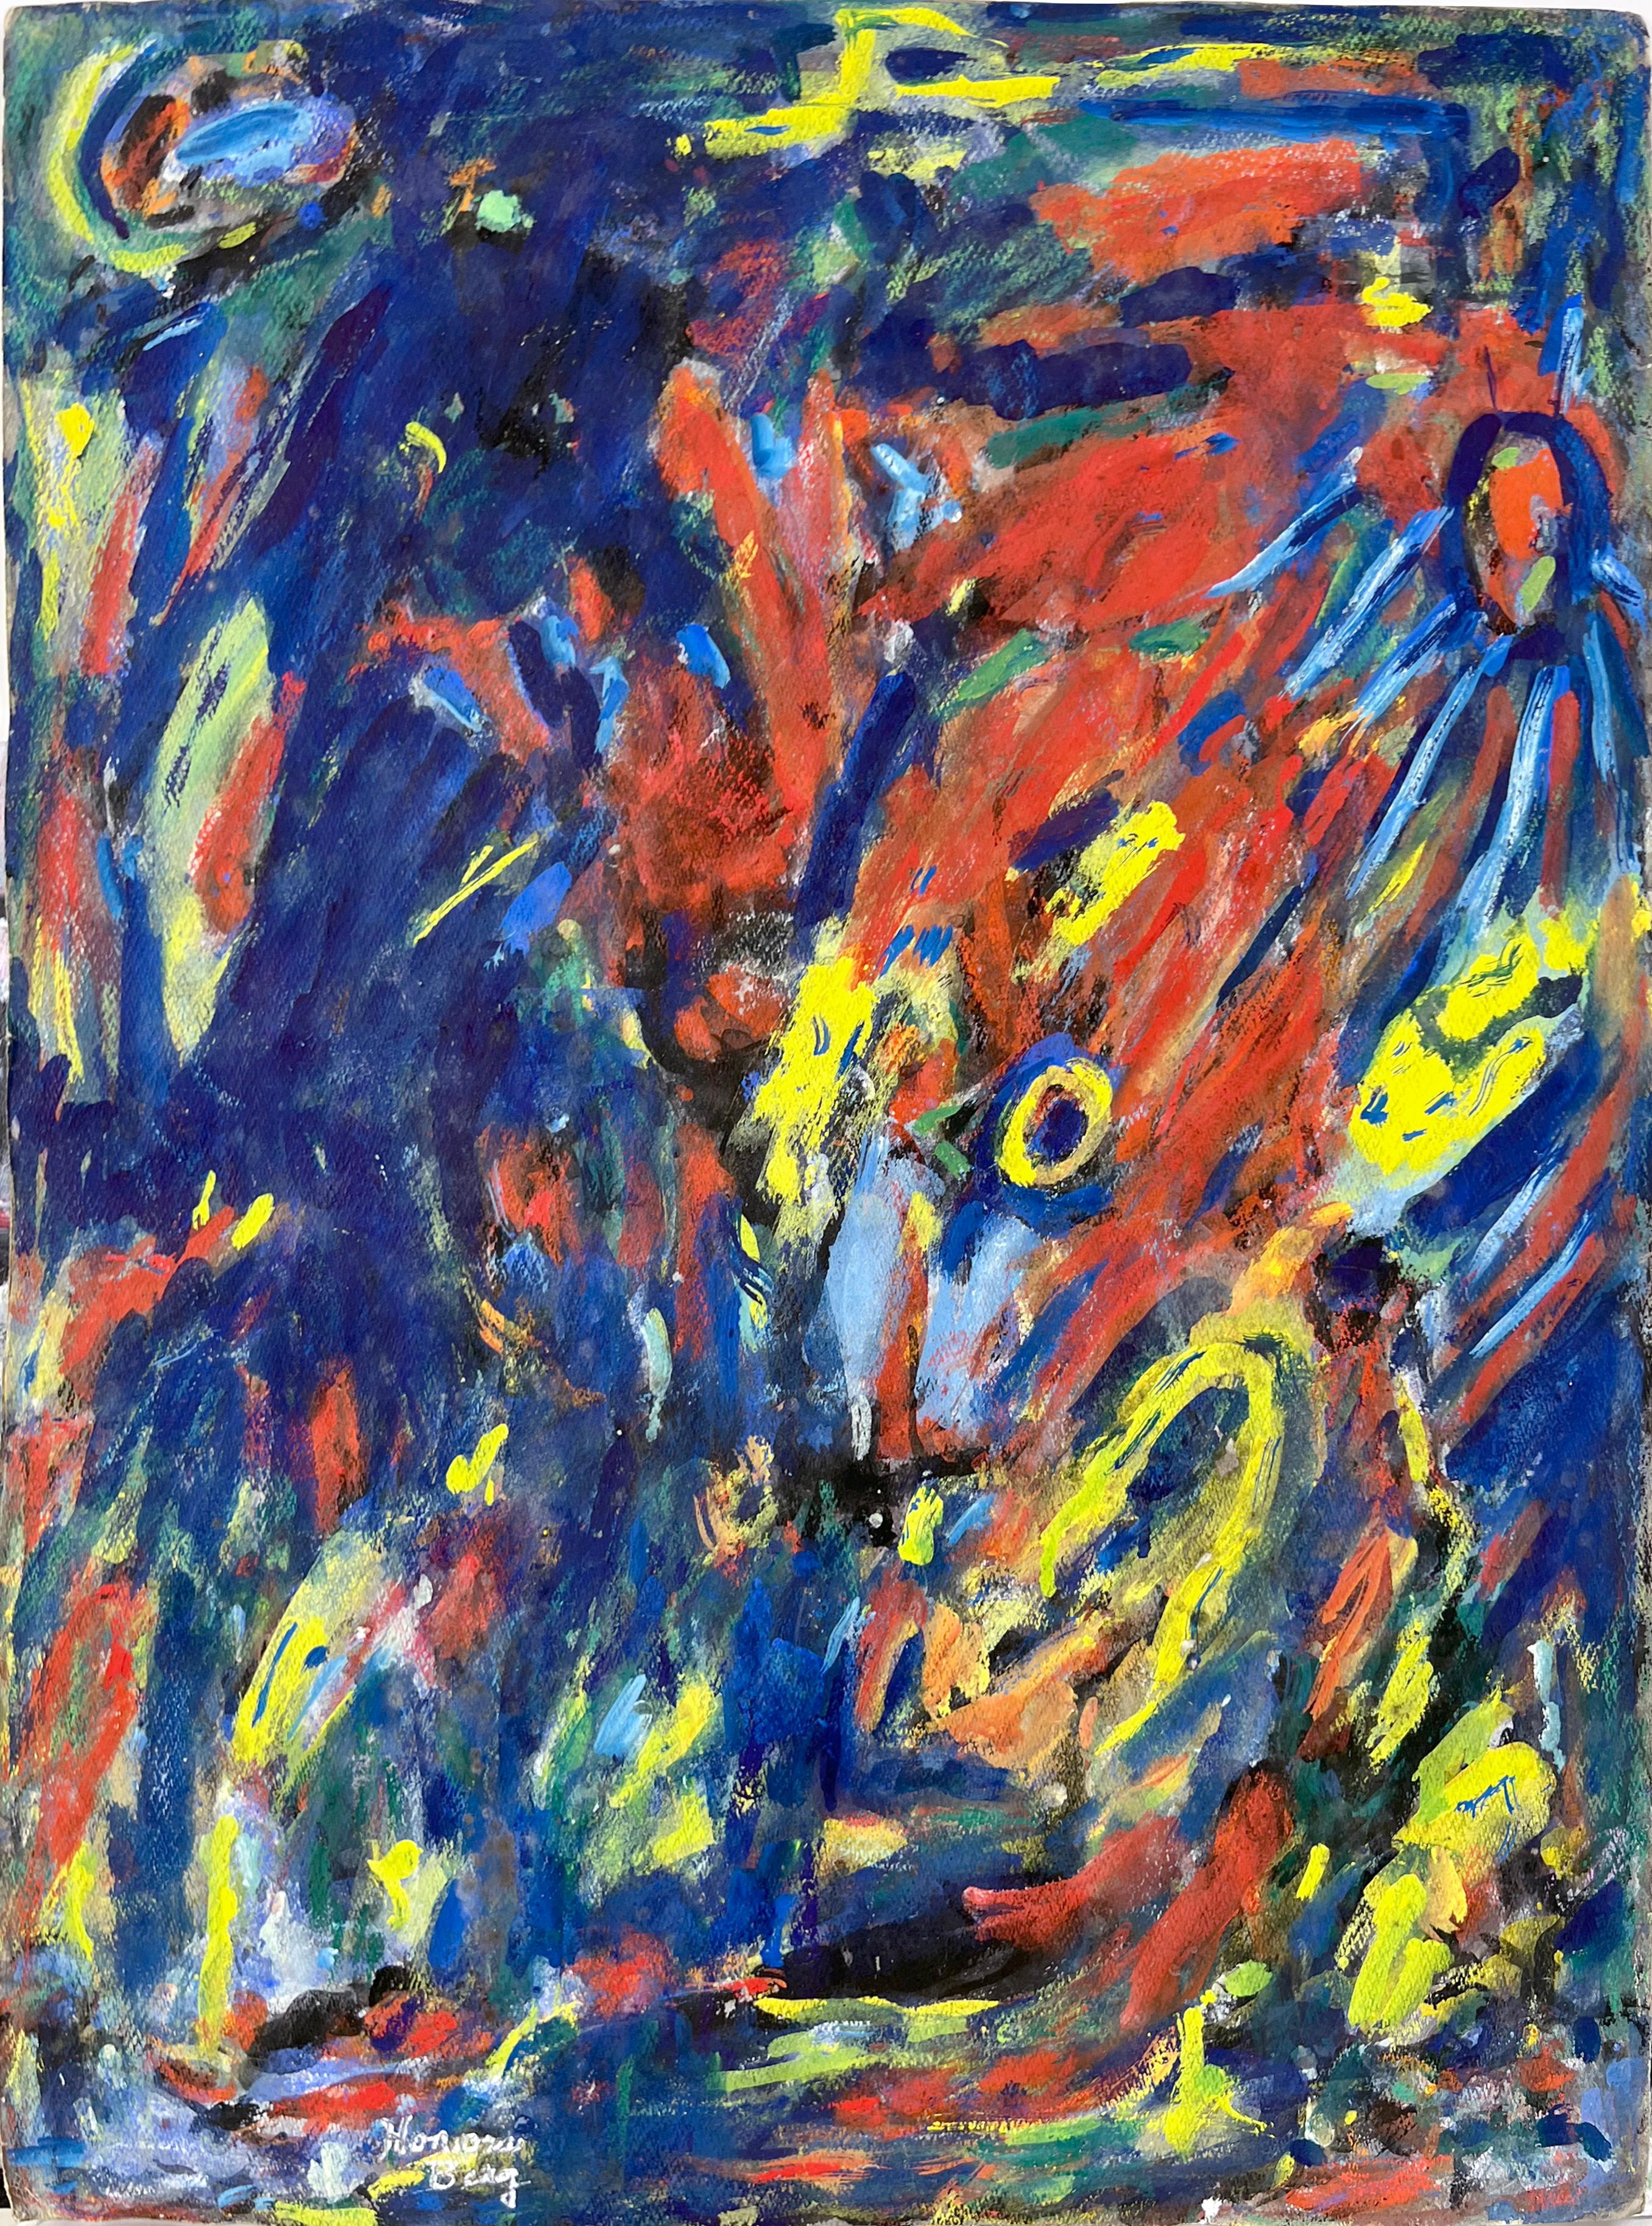 Bay Area Abstract Expressionist Fauvist Oil on Paper Honora Berg Berkeley 1959
Peinture expressionniste abstraite de Honora Berg (américaine, 1897-1985), réalisée dans la région de la baie de San Francisco. Des éclats de rouge sur des teintes de